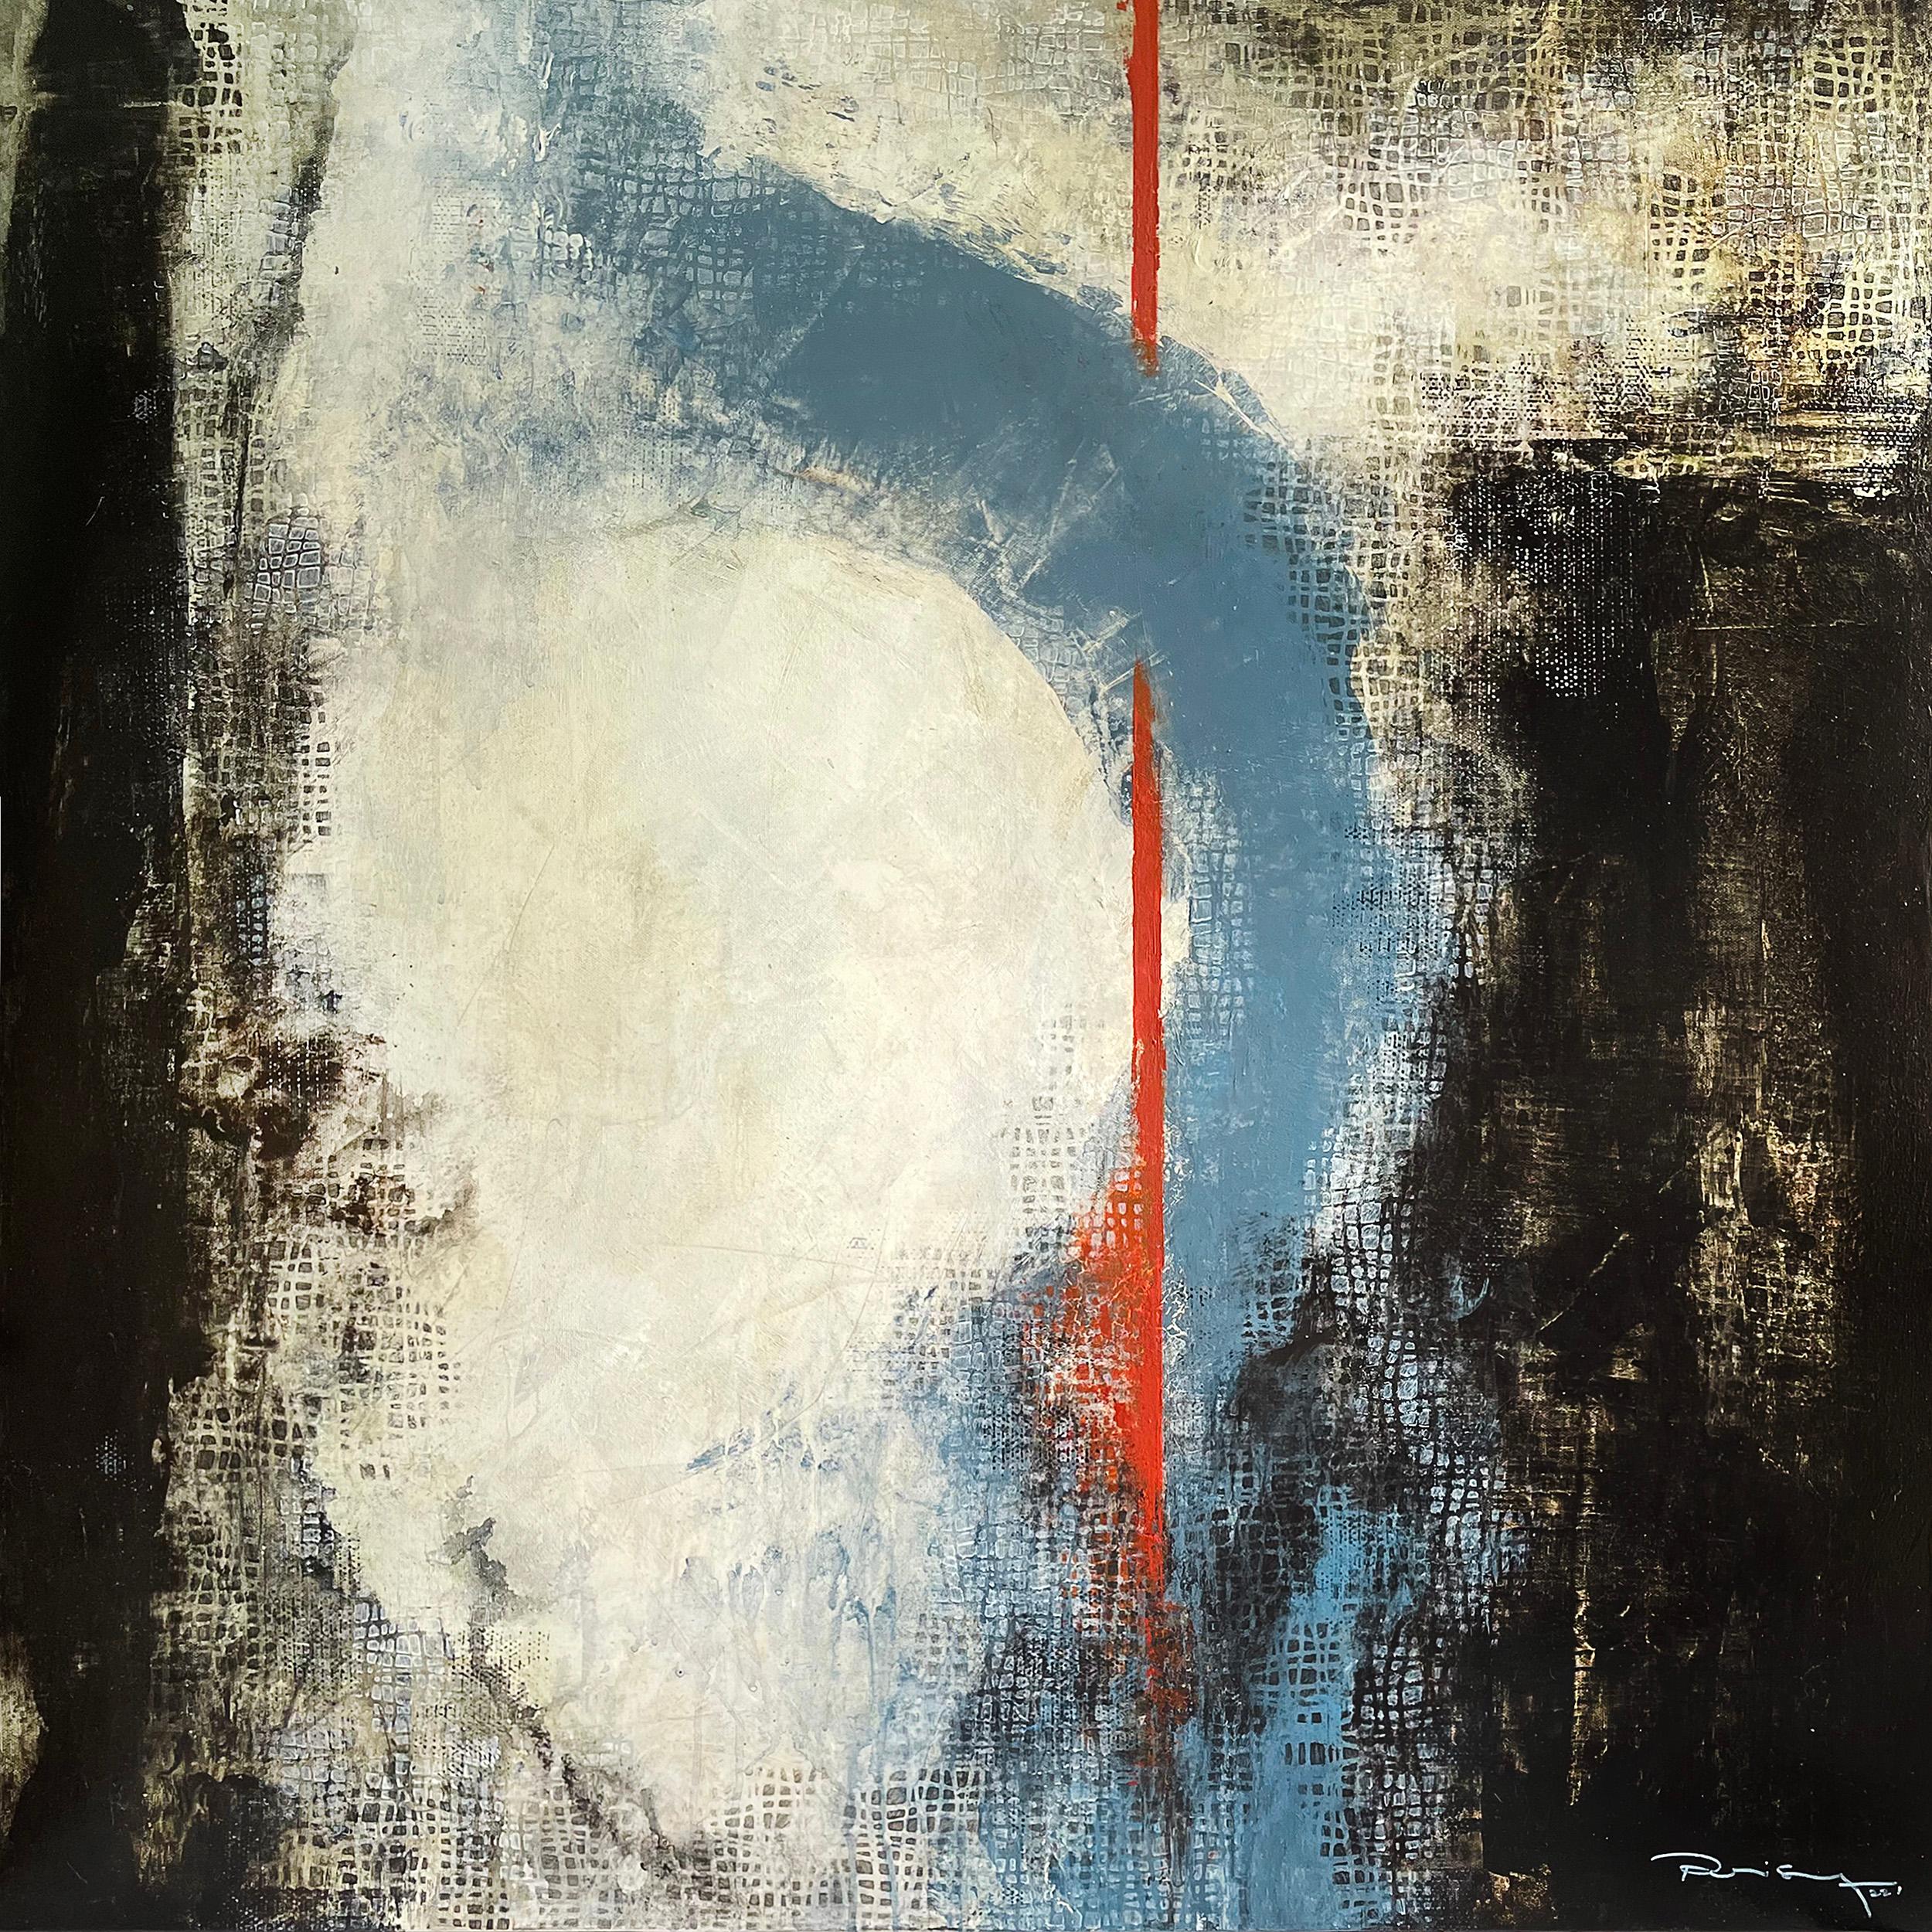 "Vortex" von Peisy Ting ist ein abstraktes, zeitgenössisches Gemälde, das durch seine kühnen, kontrastreichen Elemente auffällt. Das Gemälde ist in Acryl auf Leinwand gemalt und zeigt eine Farbpalette, die von Weiß und Schwarz dominiert wird, mit